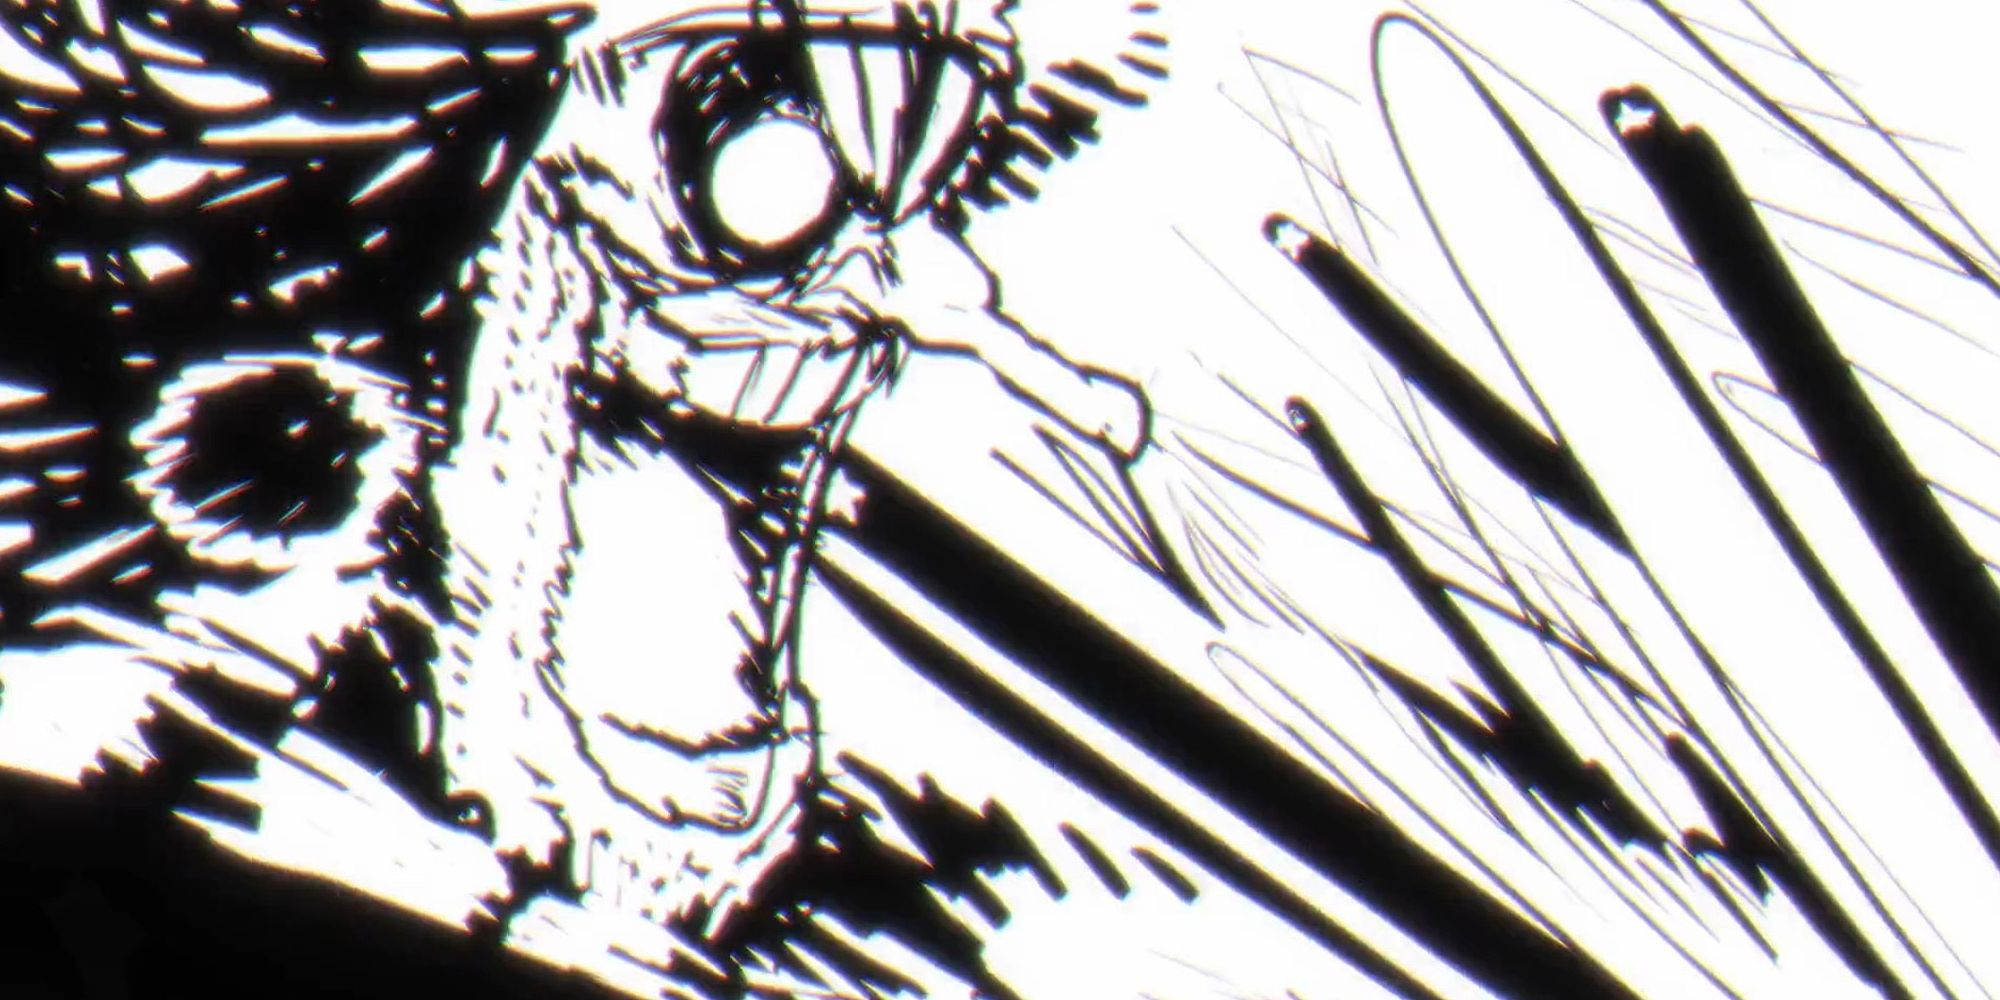 A captura de tela do anime One Piece 1093 mostra um quadro de impacto do Barba Negra lançando um ataque com um enorme sorriso ameaçador.  A imagem está em preto e branco com linhas pretas grossas.